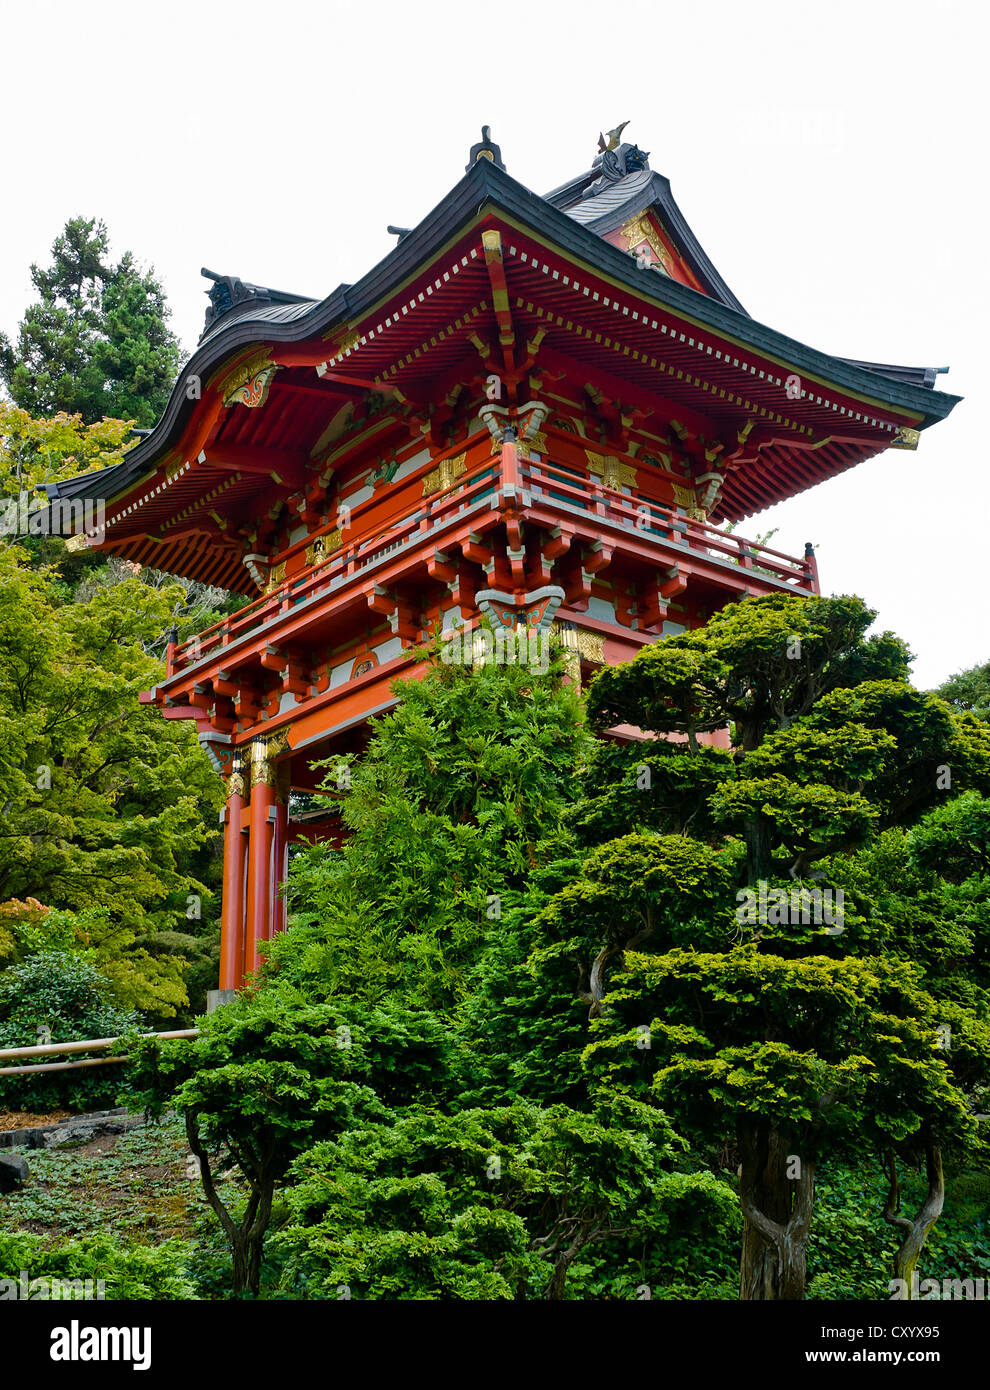 Japanische Tee-Garten im Golden Gate Park San Francisco Kalifornien, mehrere Ebenen rotes Dach Pagode Hochhaus Tee Haus Stockfoto